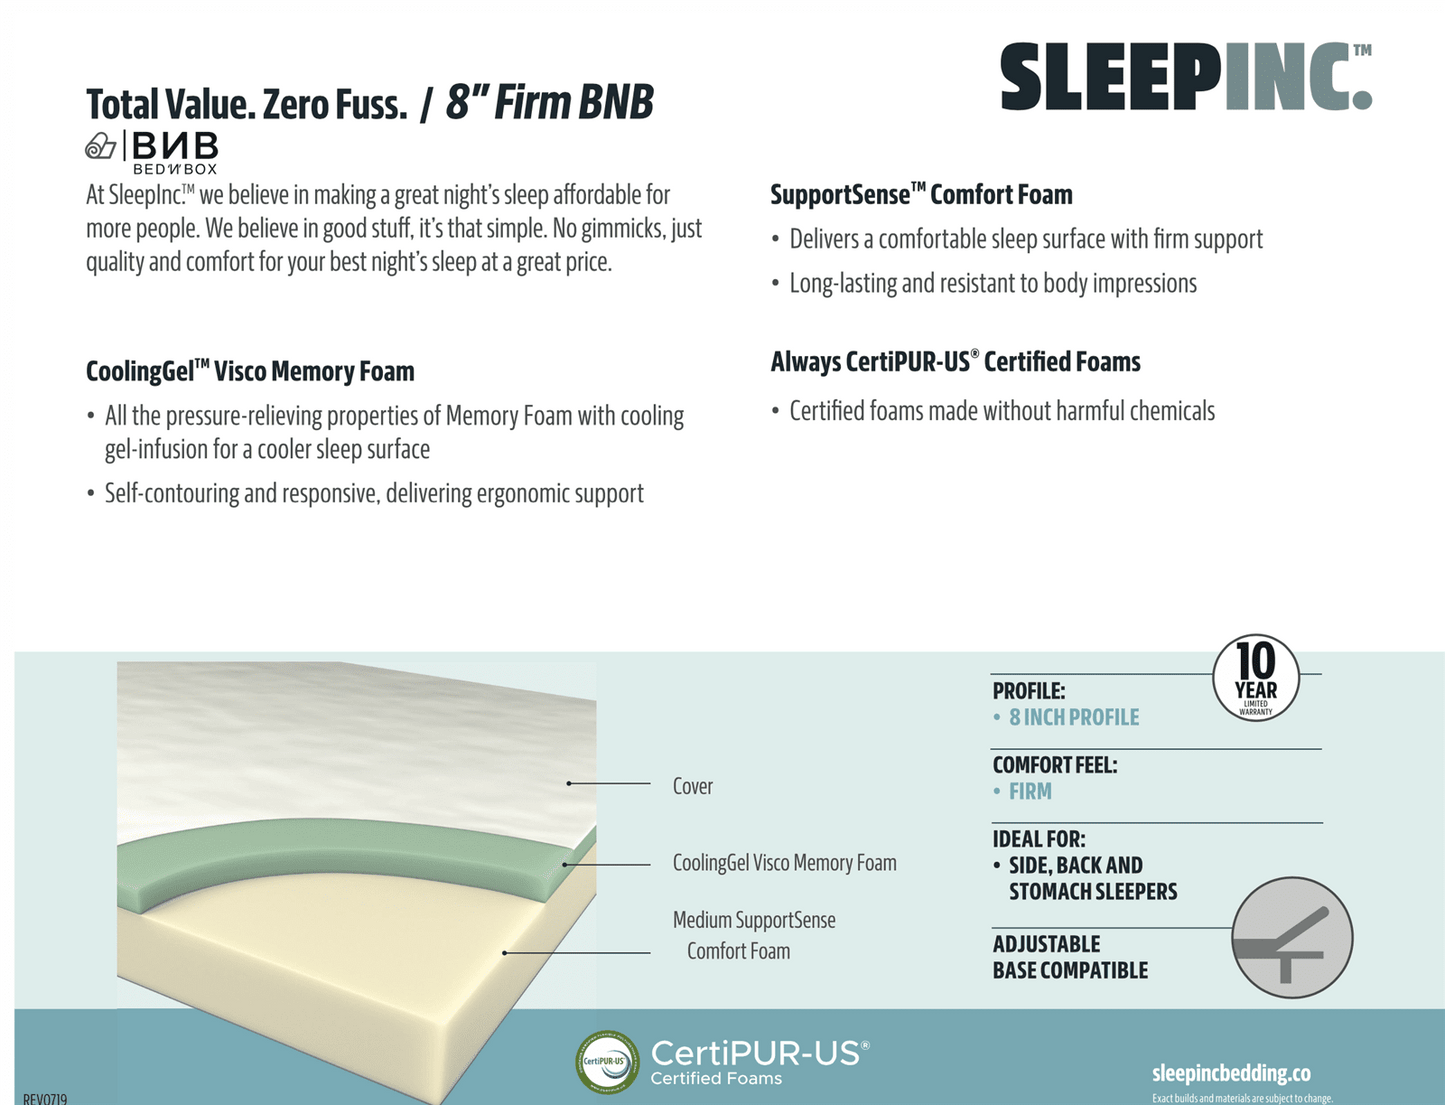 Sleep Inc S20408 8" Firm Gel Memory Foam Mattress